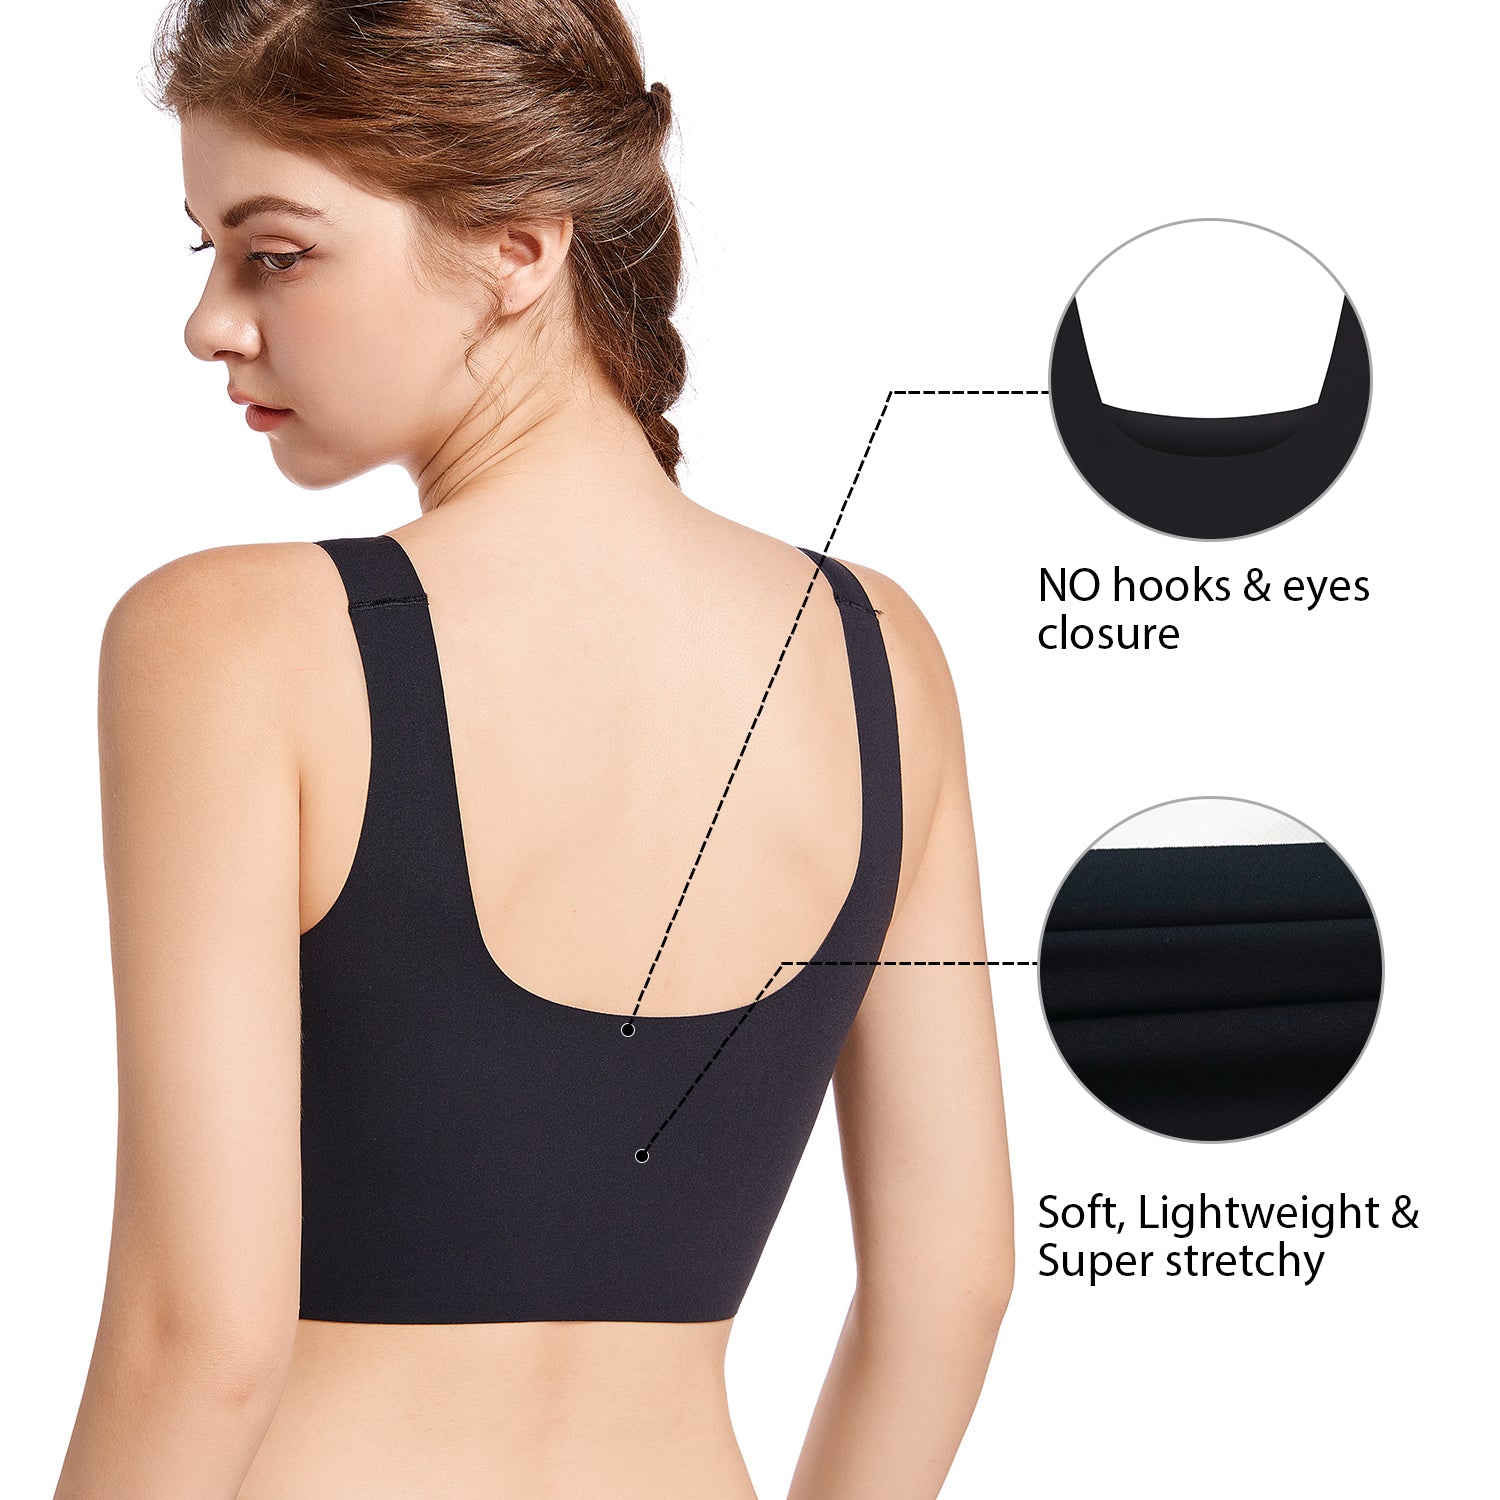 soft stretch: Women's Wireless Bras